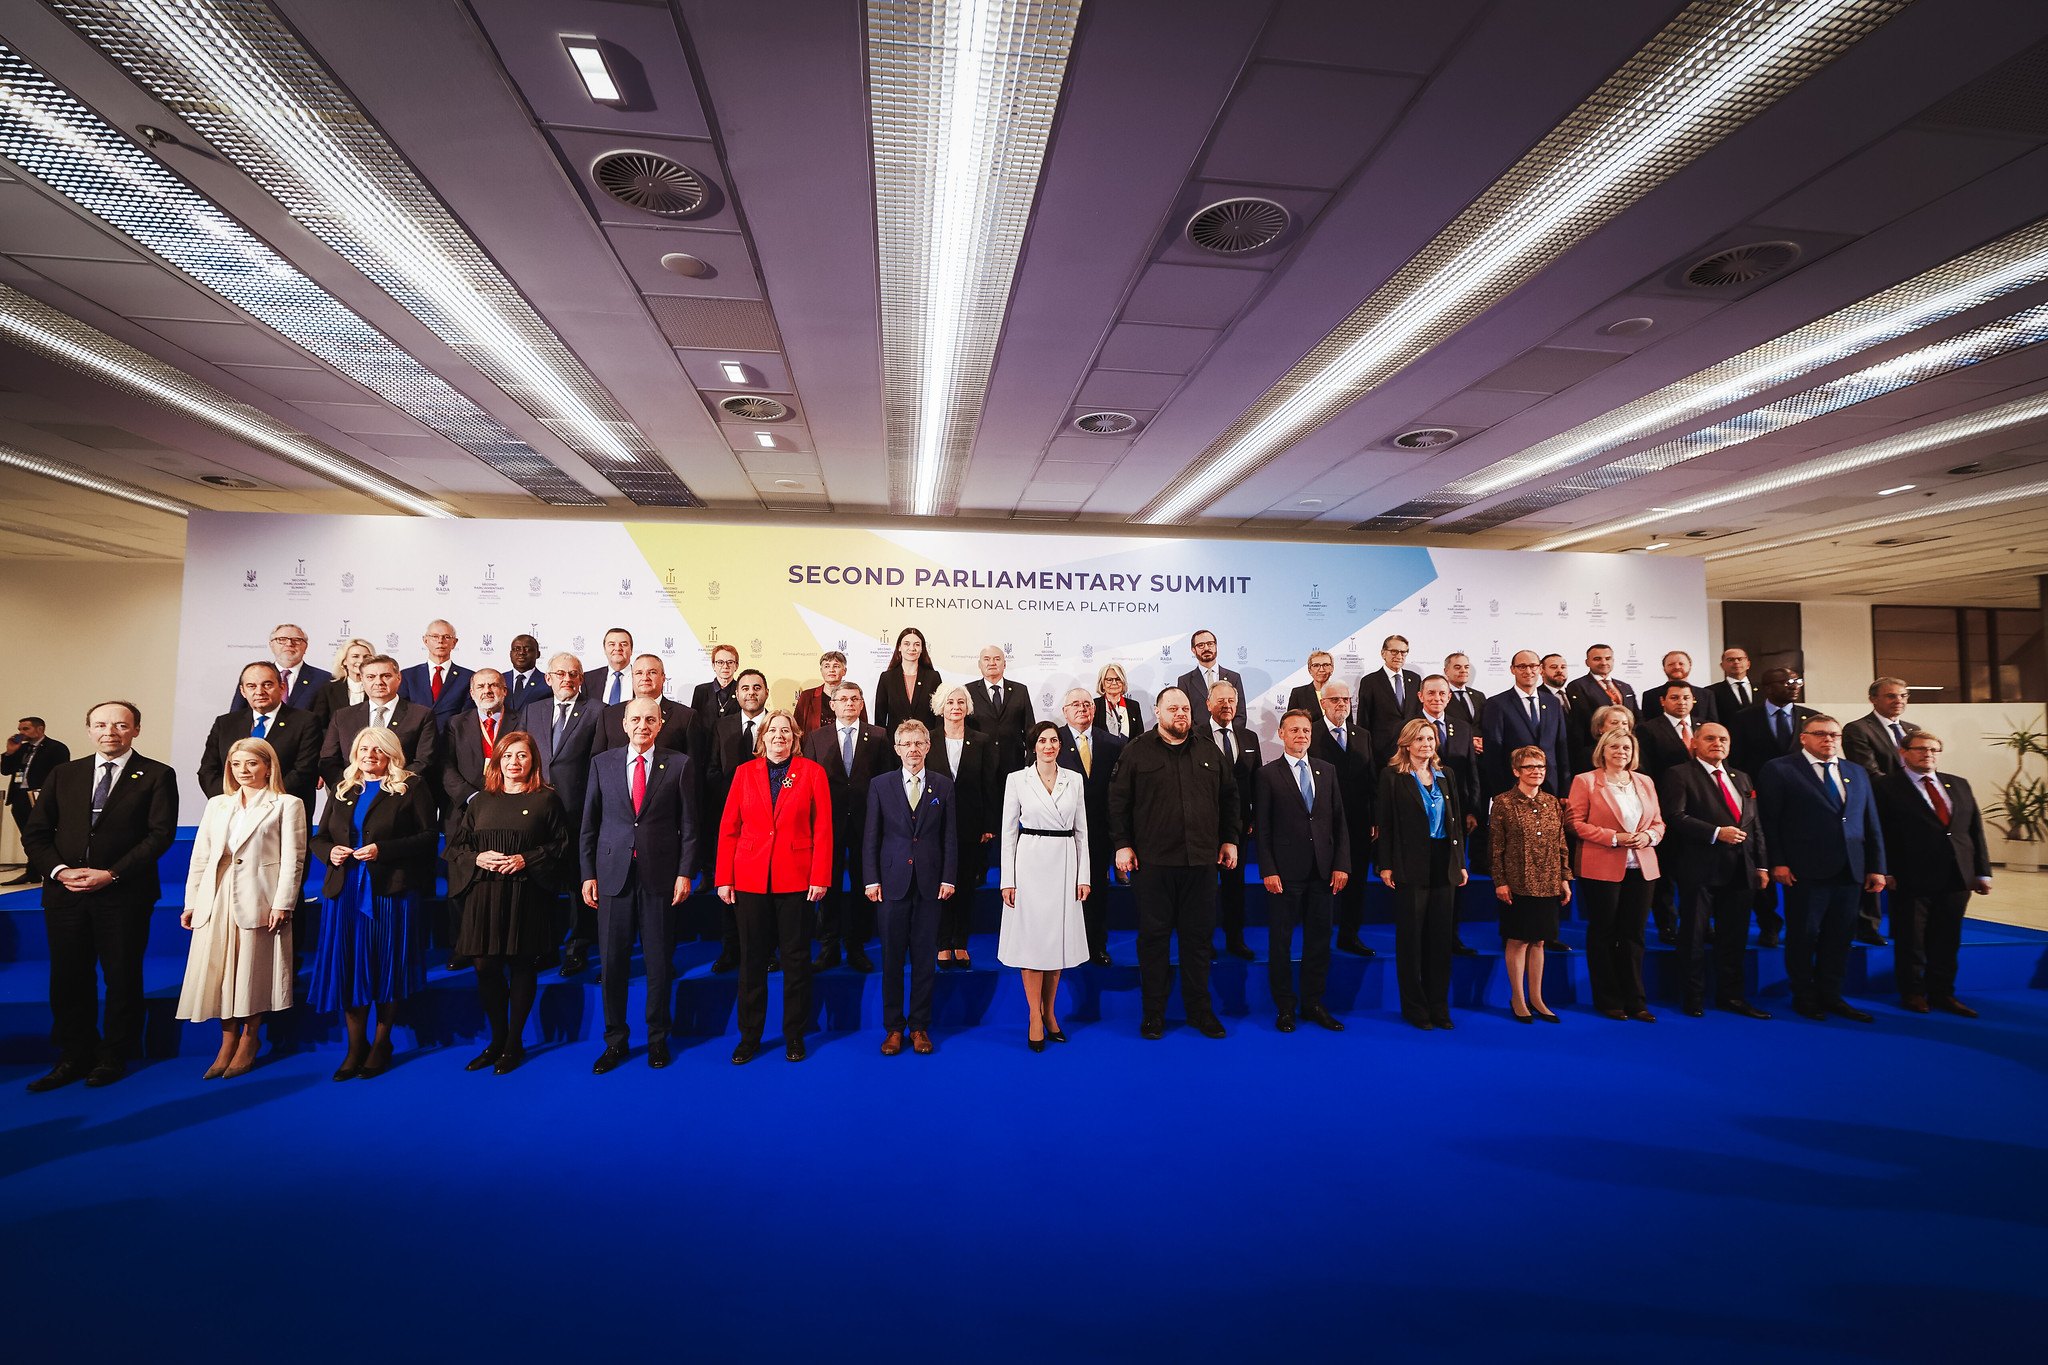 Prezydent PA NATO przemawia na szczycie parlamentarnym Platformy Krymskiej, wzywając do niezachwianego wsparcia dla Ukrainy